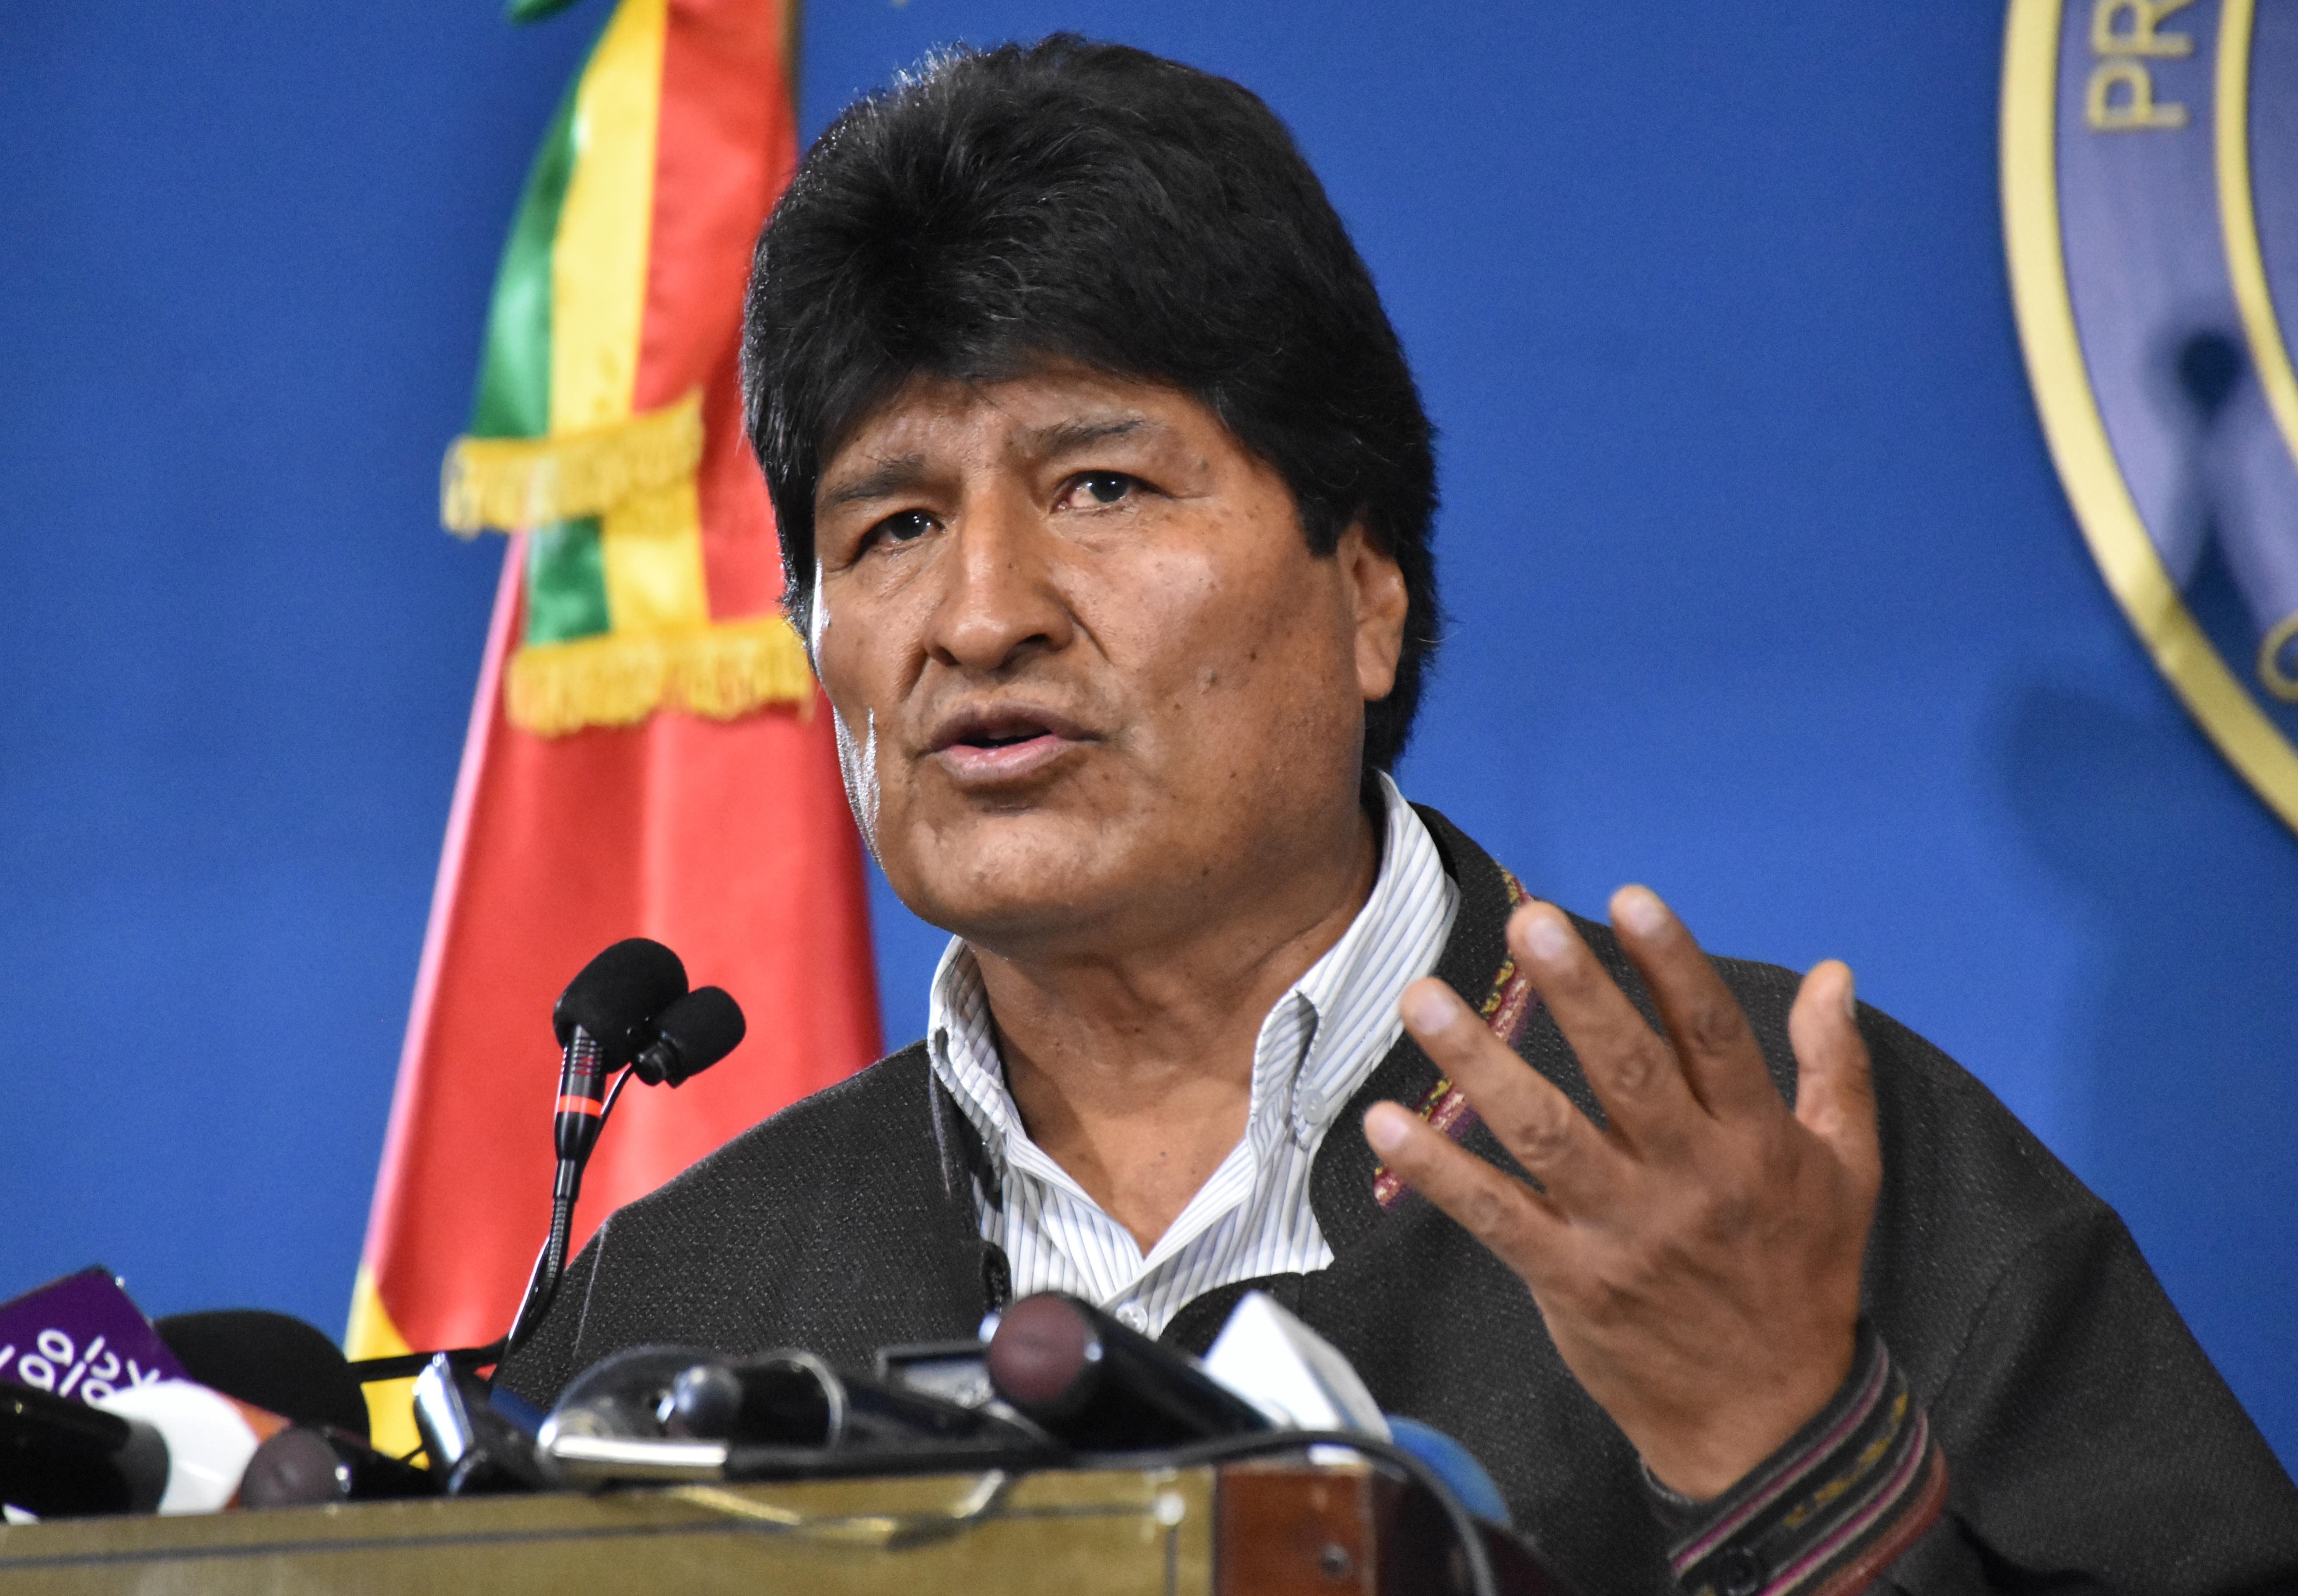 Evo Morales beadta a derekát, új választások lesznek Bolíviában